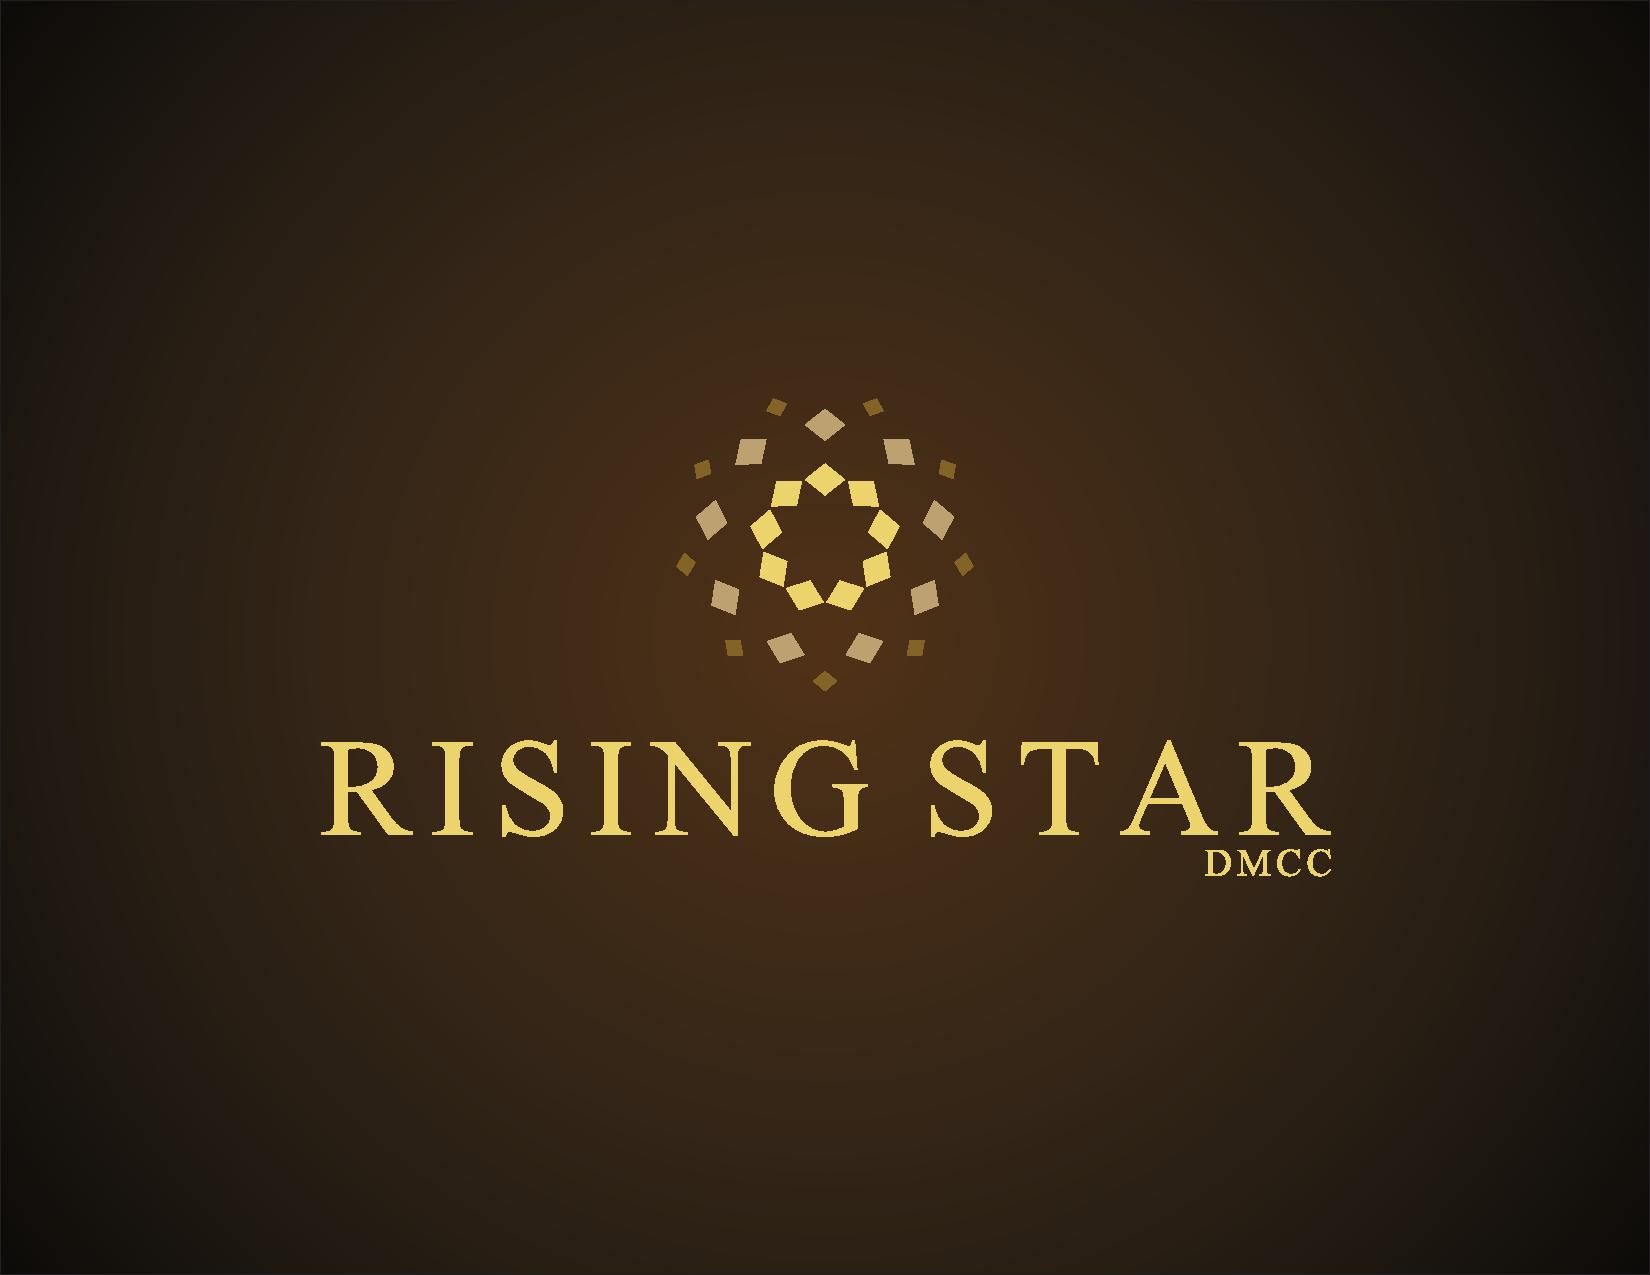 Rising Star DMCC